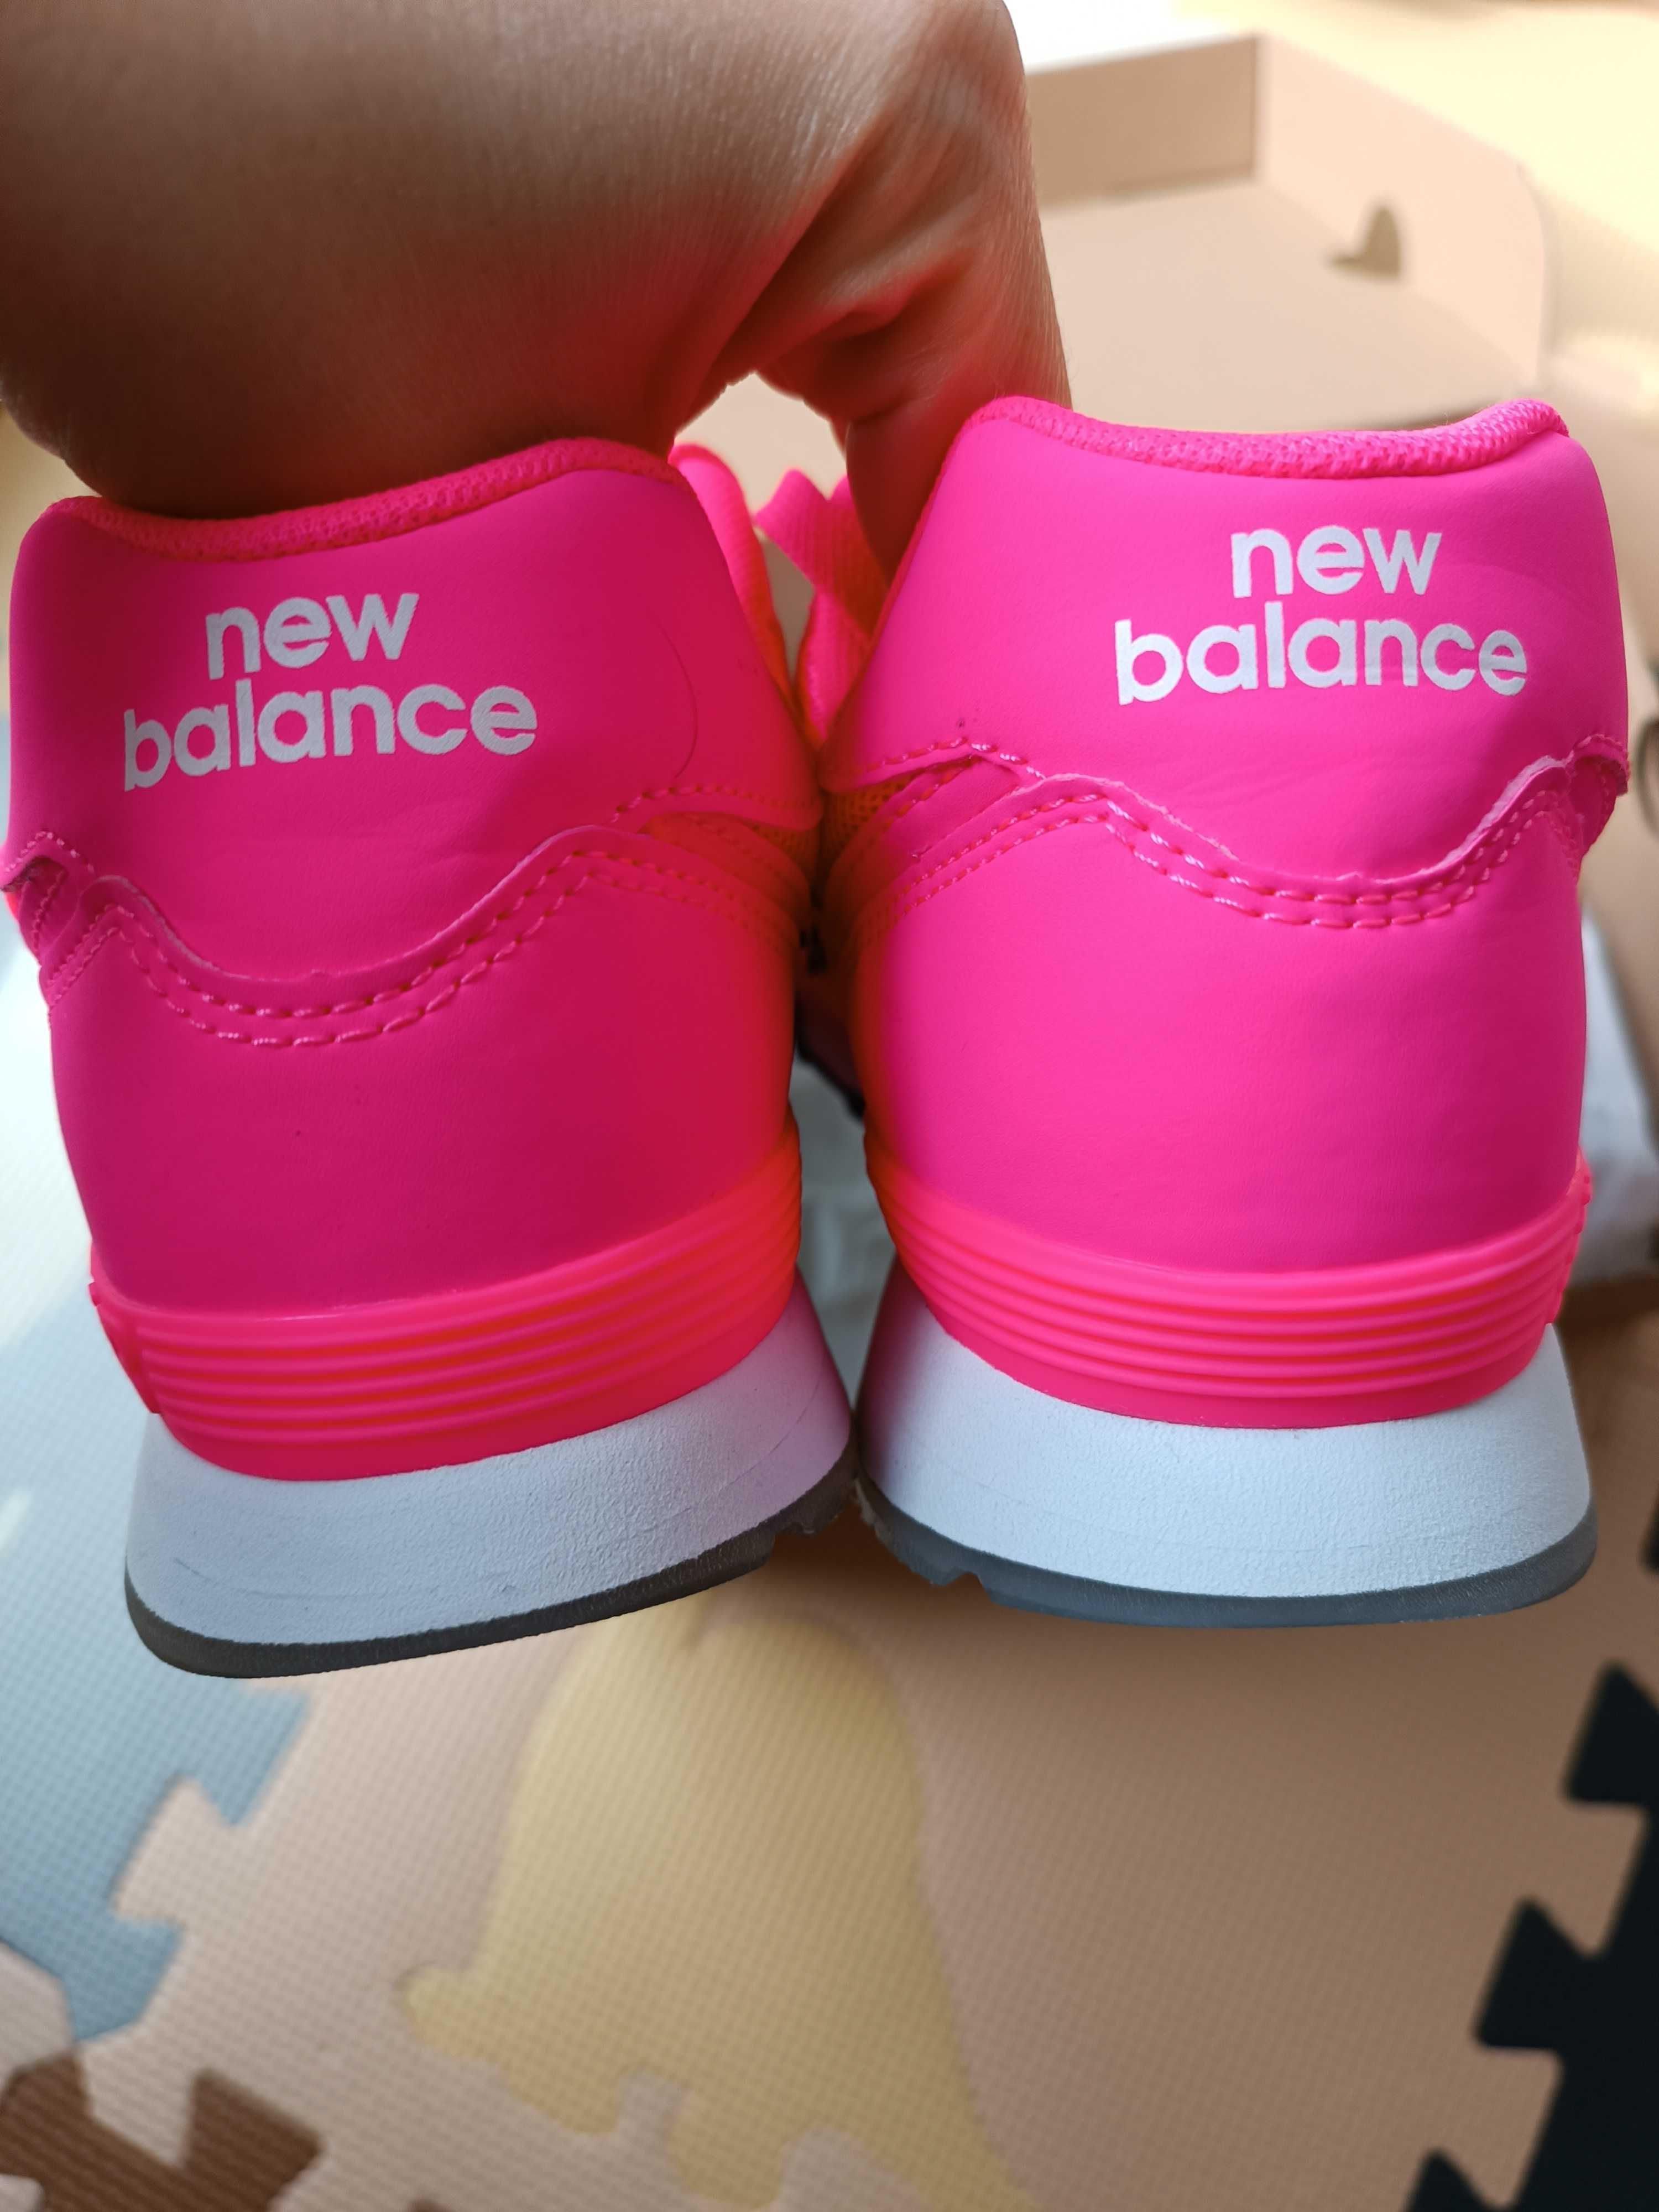 Nowe buty sneakersy New Balance rozmiar 37.5, różowe, buty na trening